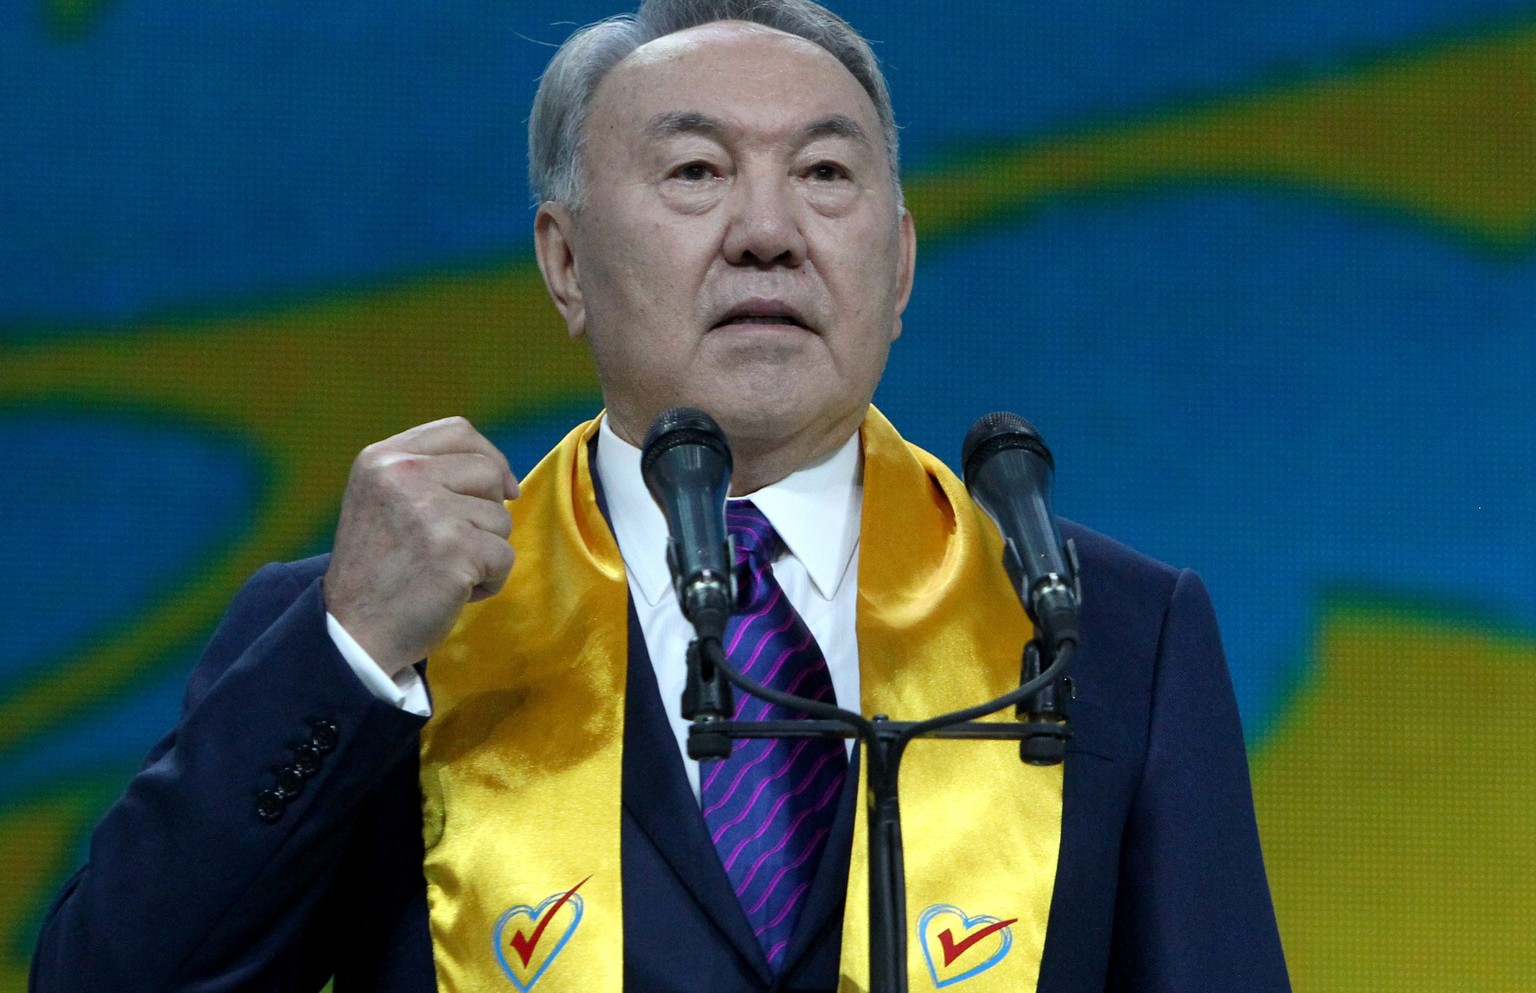 Nasarbajew regiert schon seit 25 Jahren über Kasachstan.&nbsp;